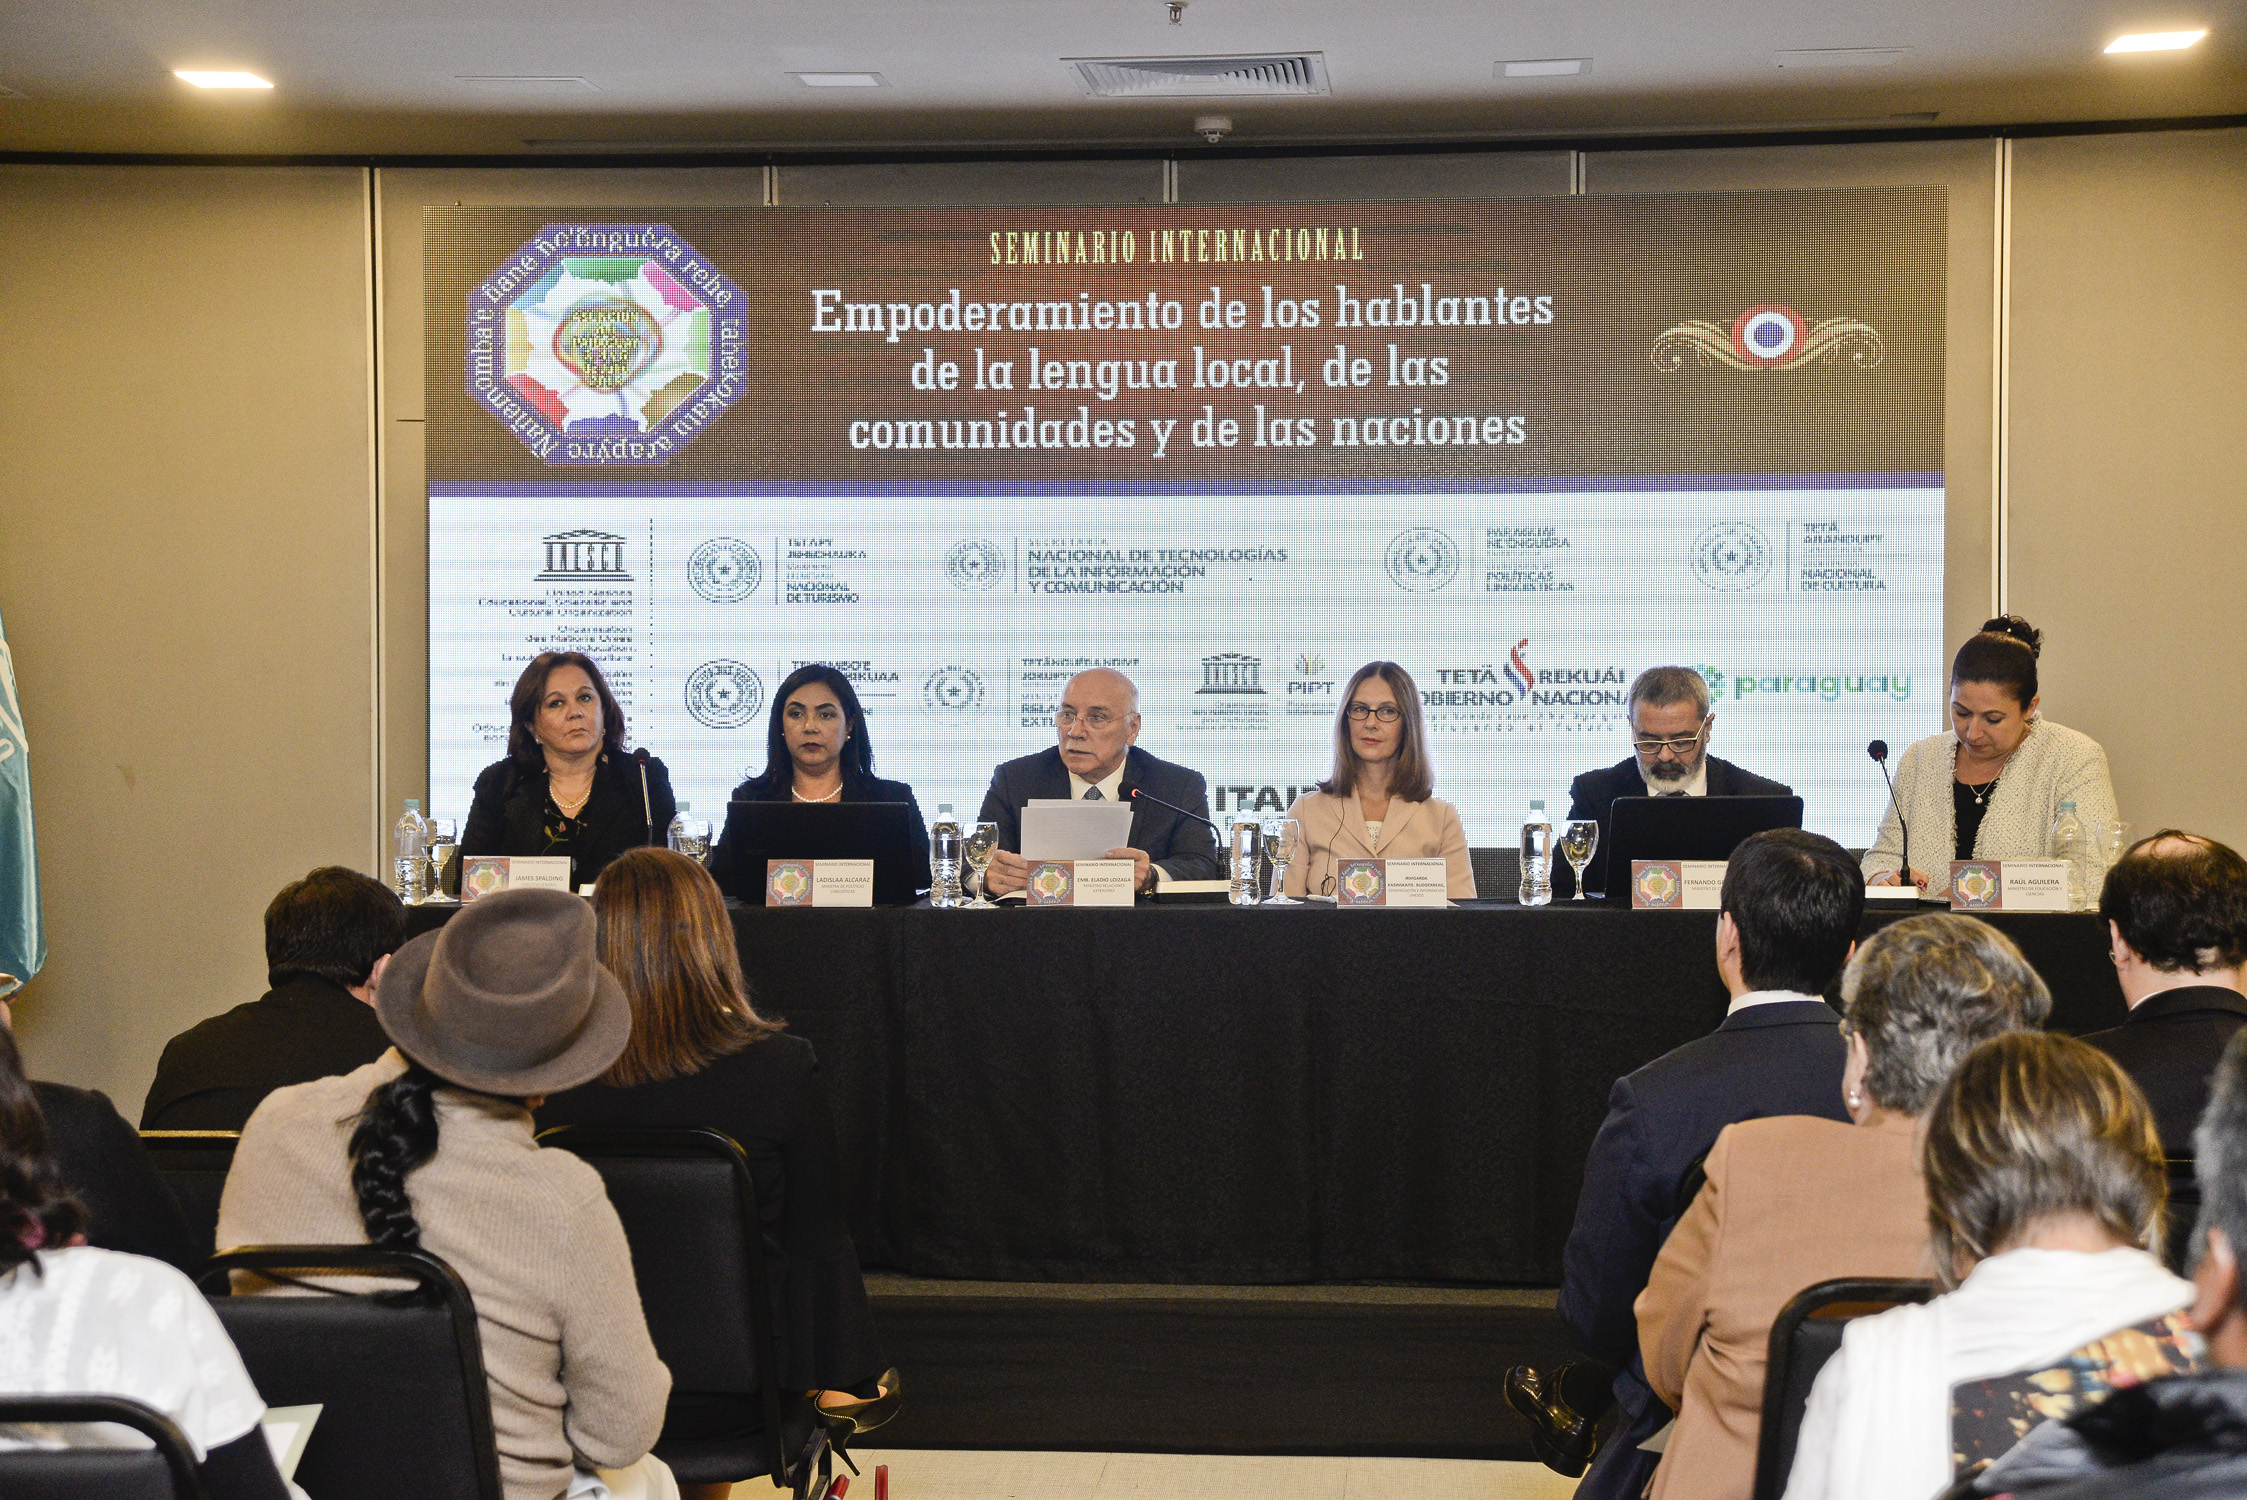 En el Seminario Internacional Loizaga afirmó que el Paraguay mantiene su firmeza en el proceso de valoración de su riqueza lingüística